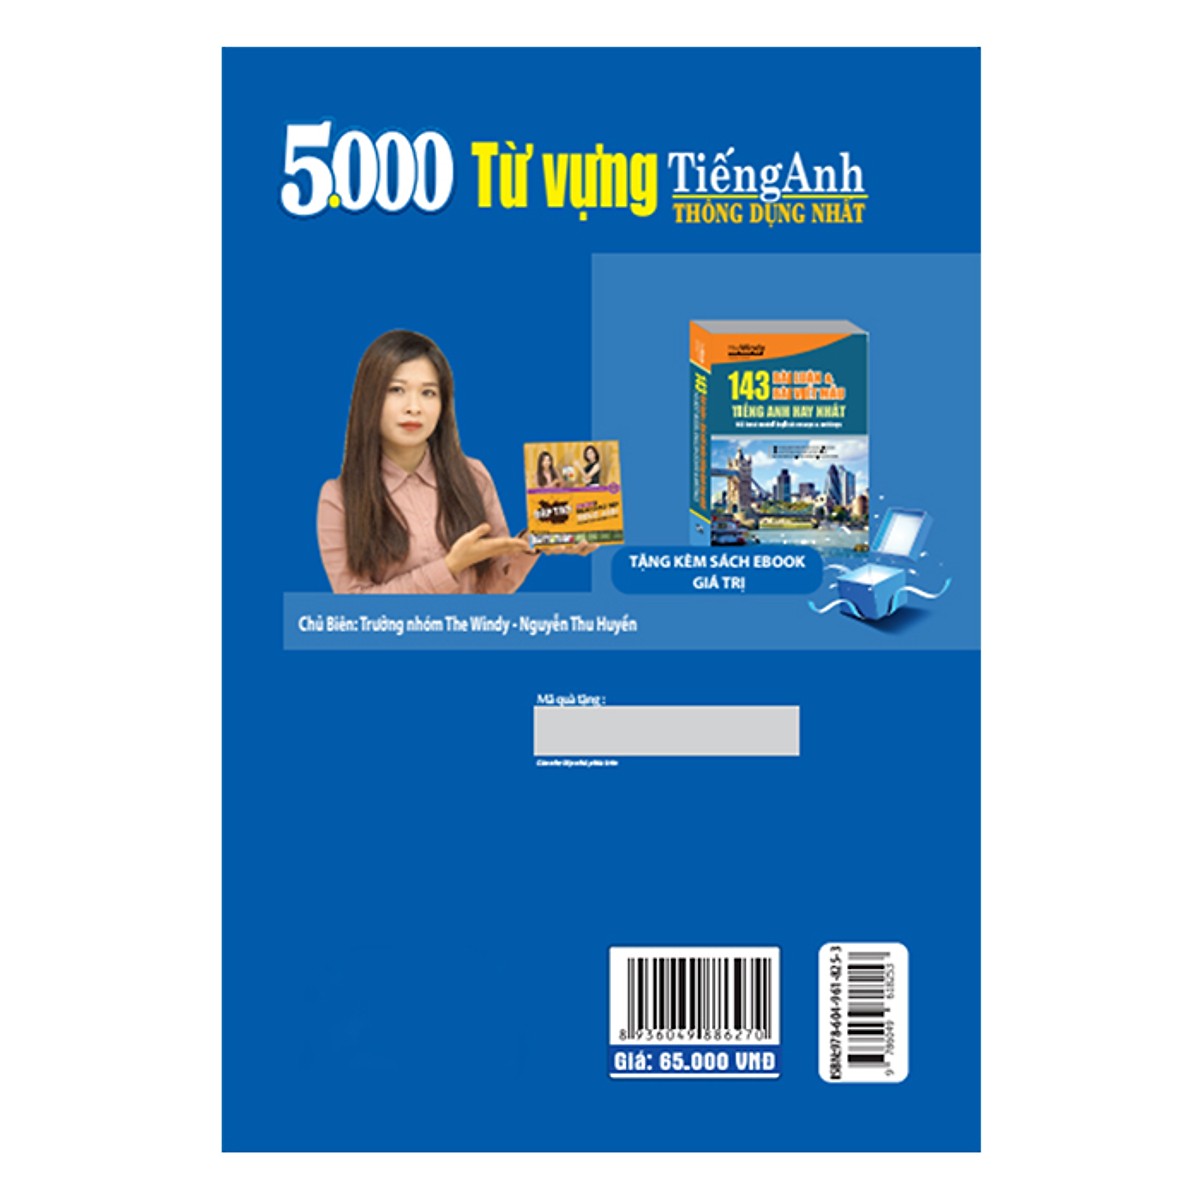 5000 Từ Vựng Tiếng Anh Thông Dụng Nhất (Tái Bản 2019 Tặng kèm bookmark)